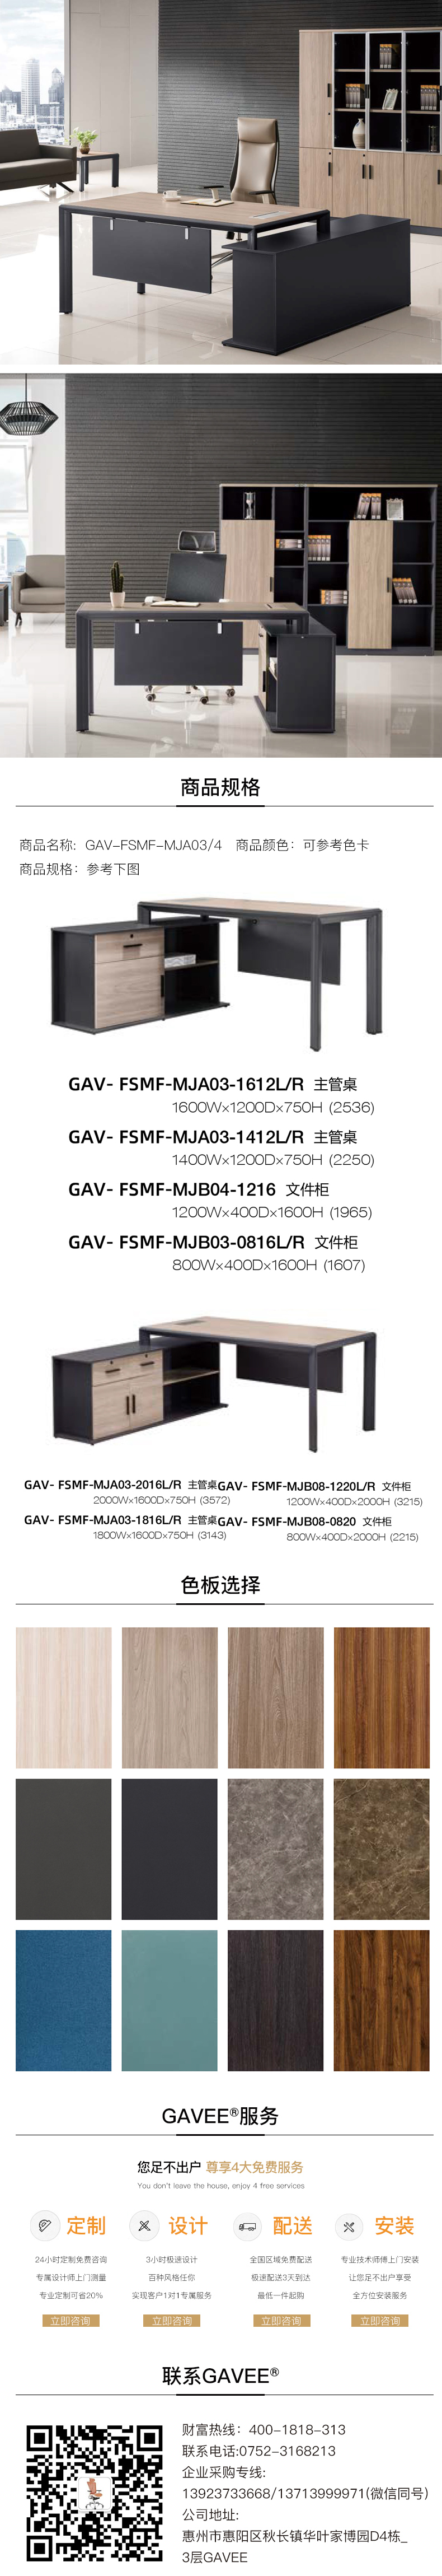 行政管理系统GAV-FSMF-MJA03-4.jpg